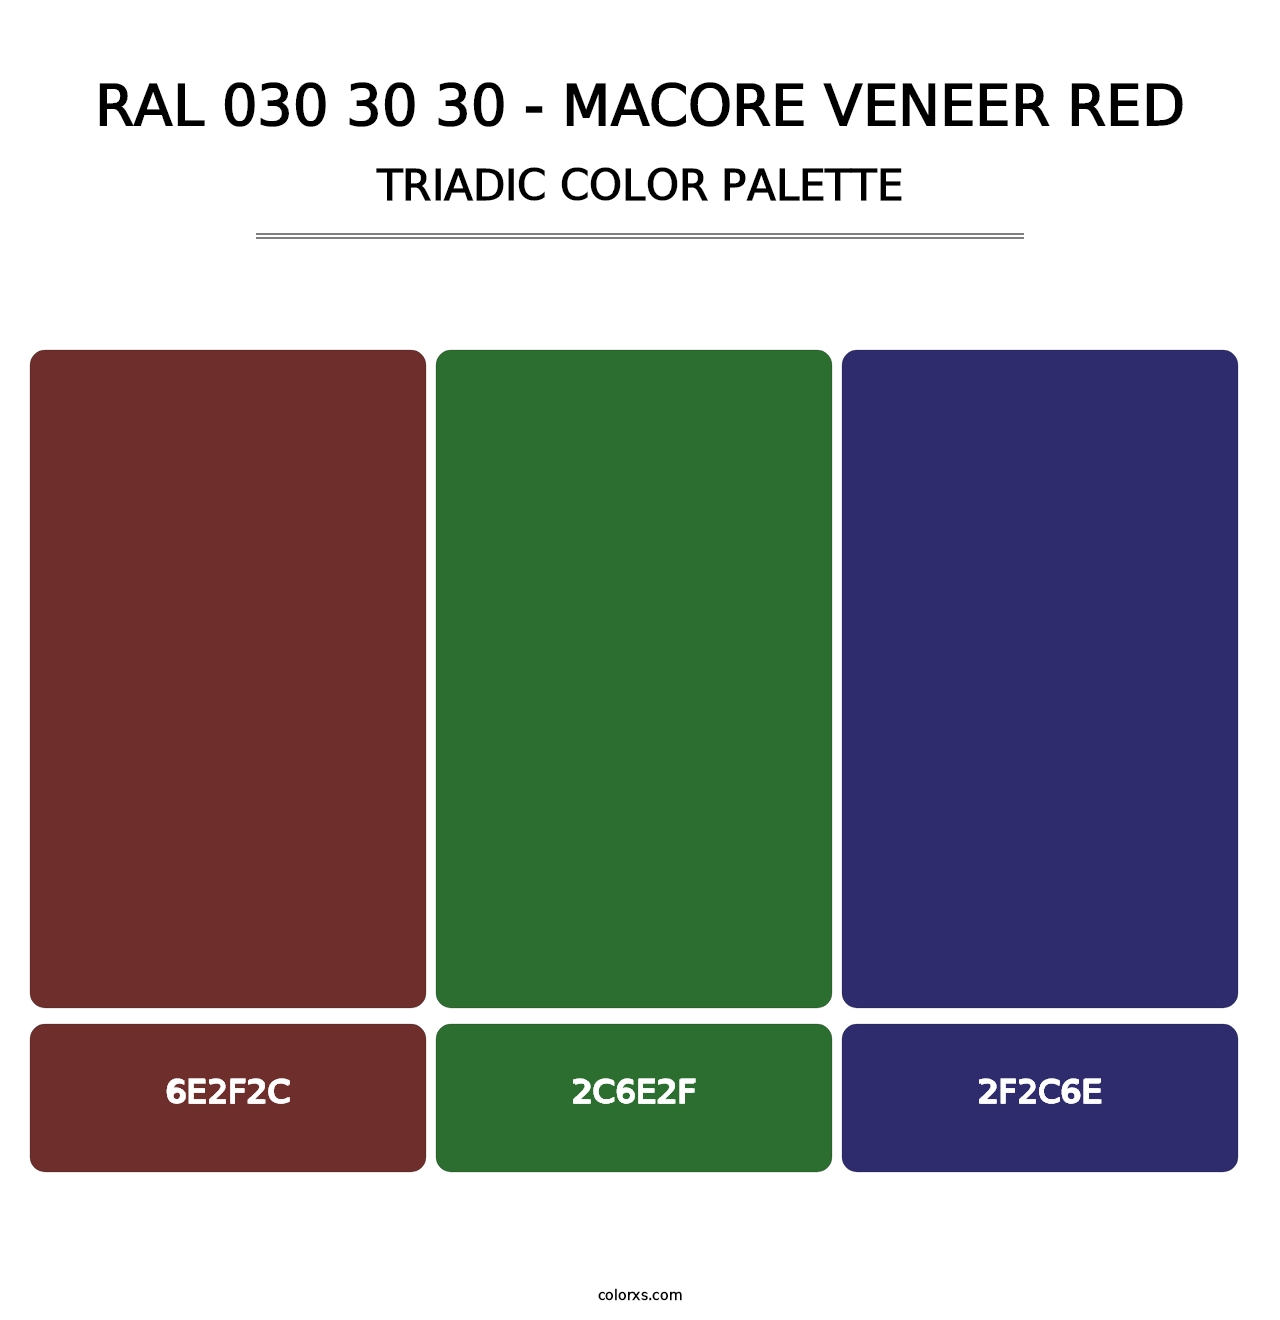 RAL 030 30 30 - Macore Veneer Red - Triadic Color Palette